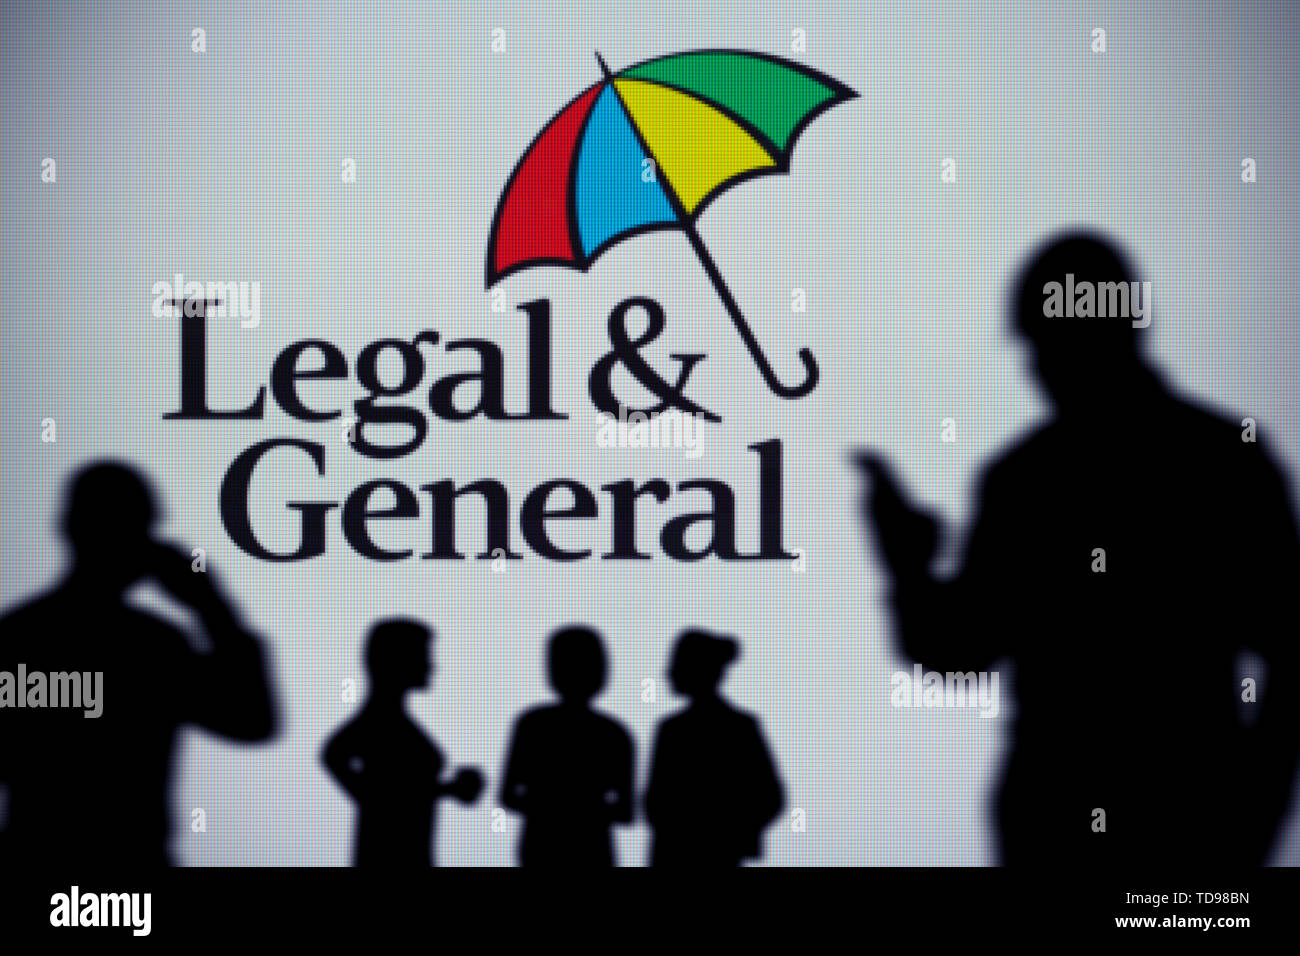 Il quadro giuridico e il logo generale è visibile su uno schermo a LED in background mentre si profila una persona utilizza uno smartphone (solo uso editoriale). Foto Stock